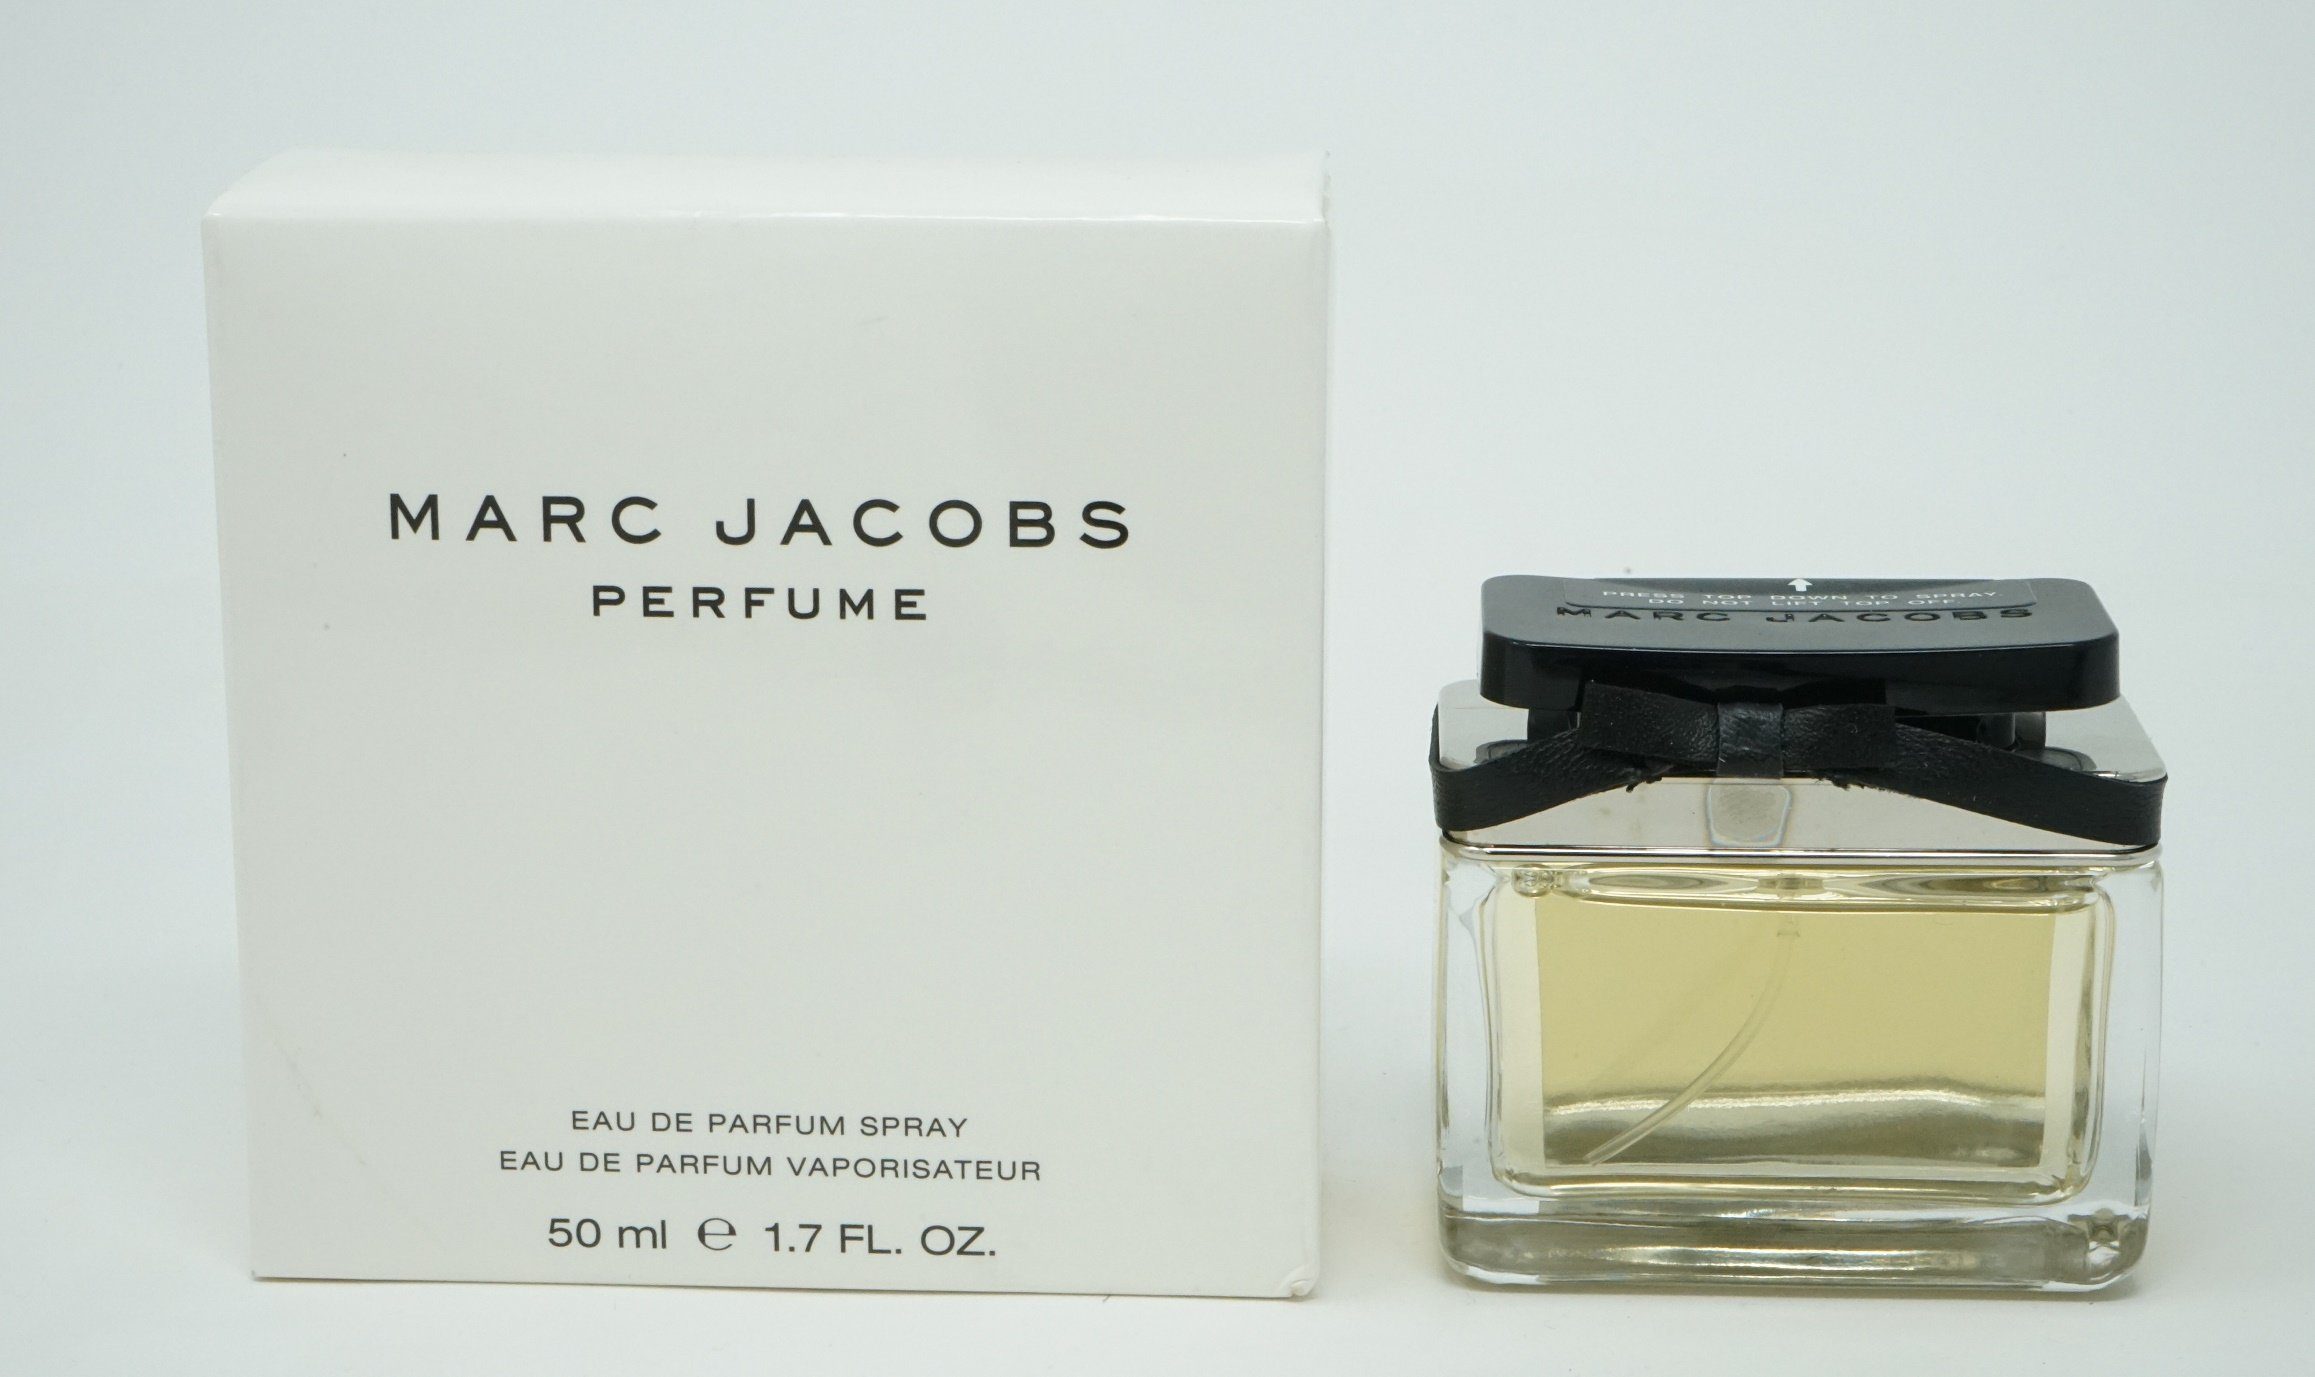 MARC JACOBS Eau de Parfum Marc Jacobs Perfume Eau de Parfum Spray 50ml